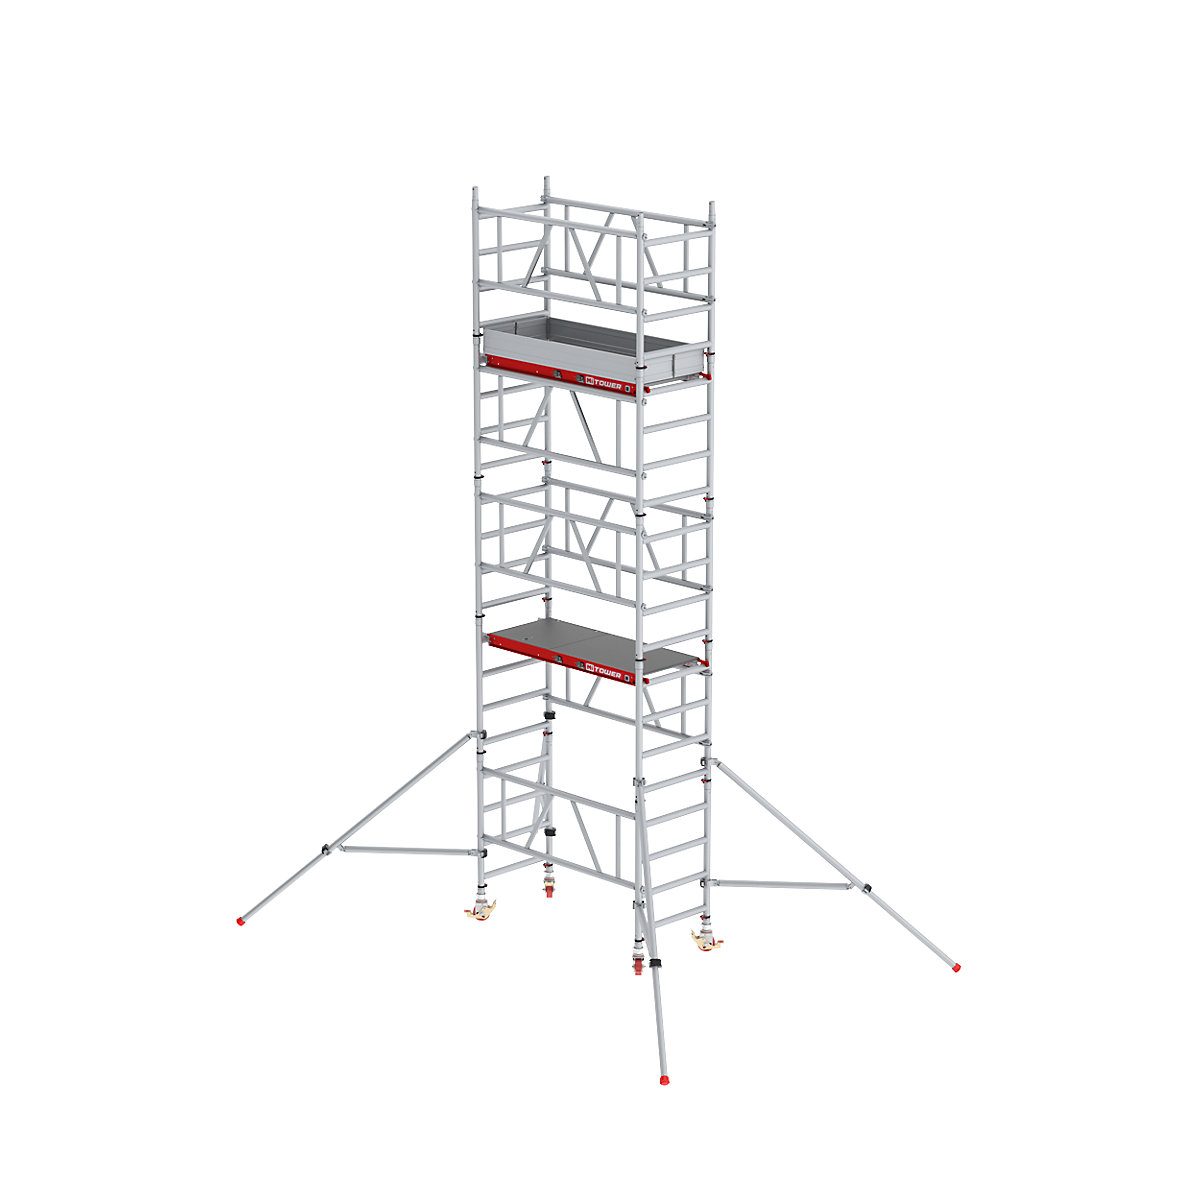 Snel op te bouwen rolsteiger MiTOWER Plus – Altrex, Fiber-Deck®-platform, werkhoogte 6 m-2